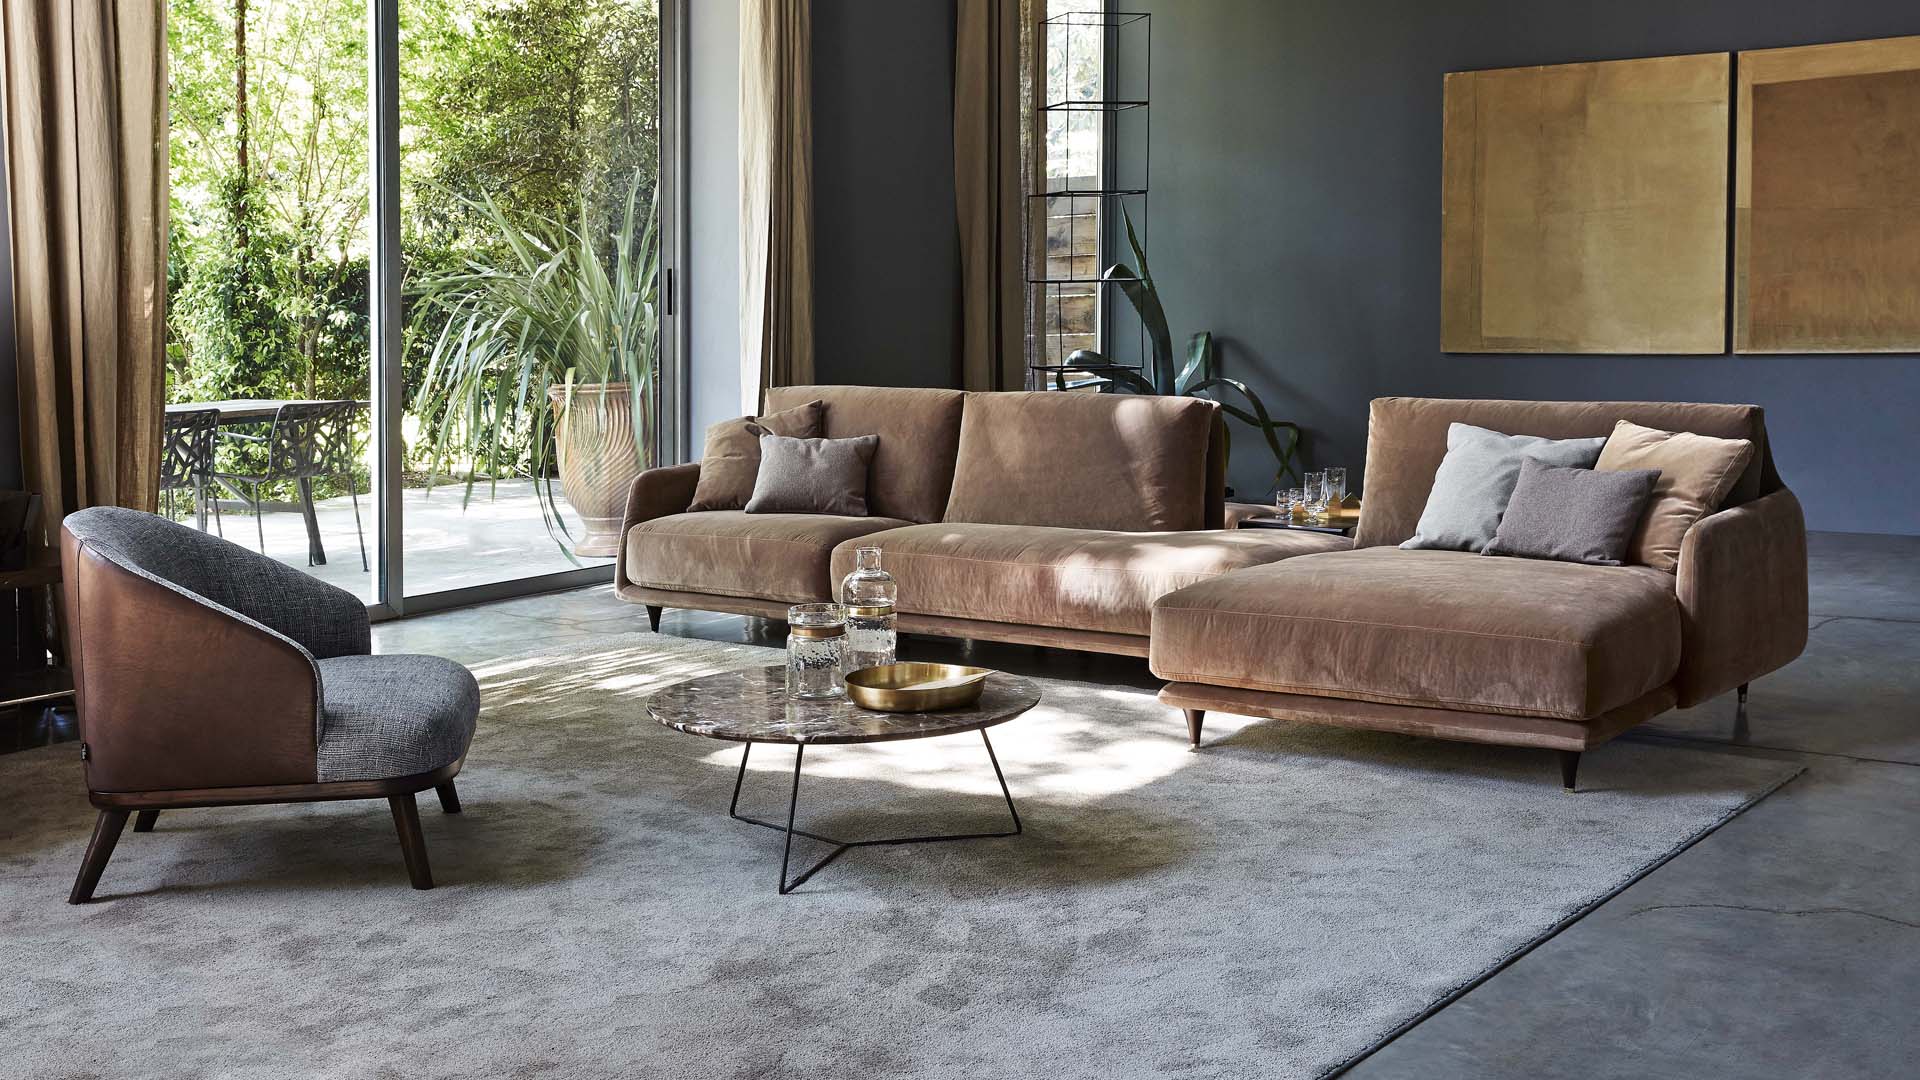 Купить современный диван - модель дивана, функциональность,качество и эстетичность